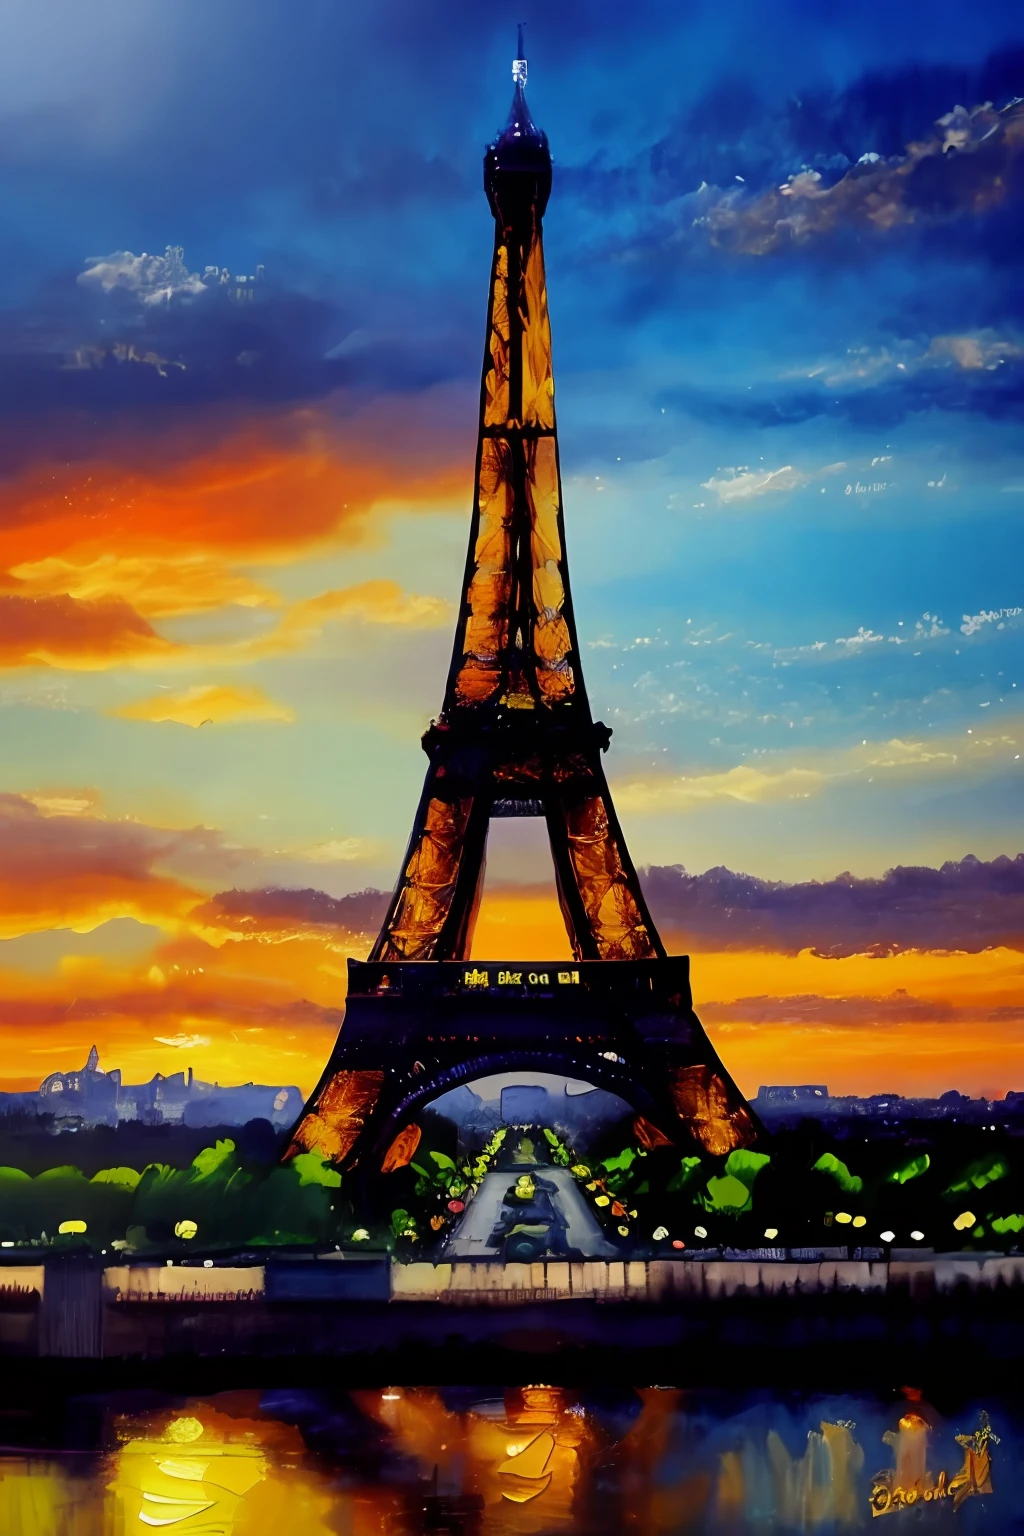 Pintura a óleo da Torre Eiffel, altamente detalhado, melhor qualidade, 8K,estilo de sessão de modelo, iluminação dramática, regra do terceiro